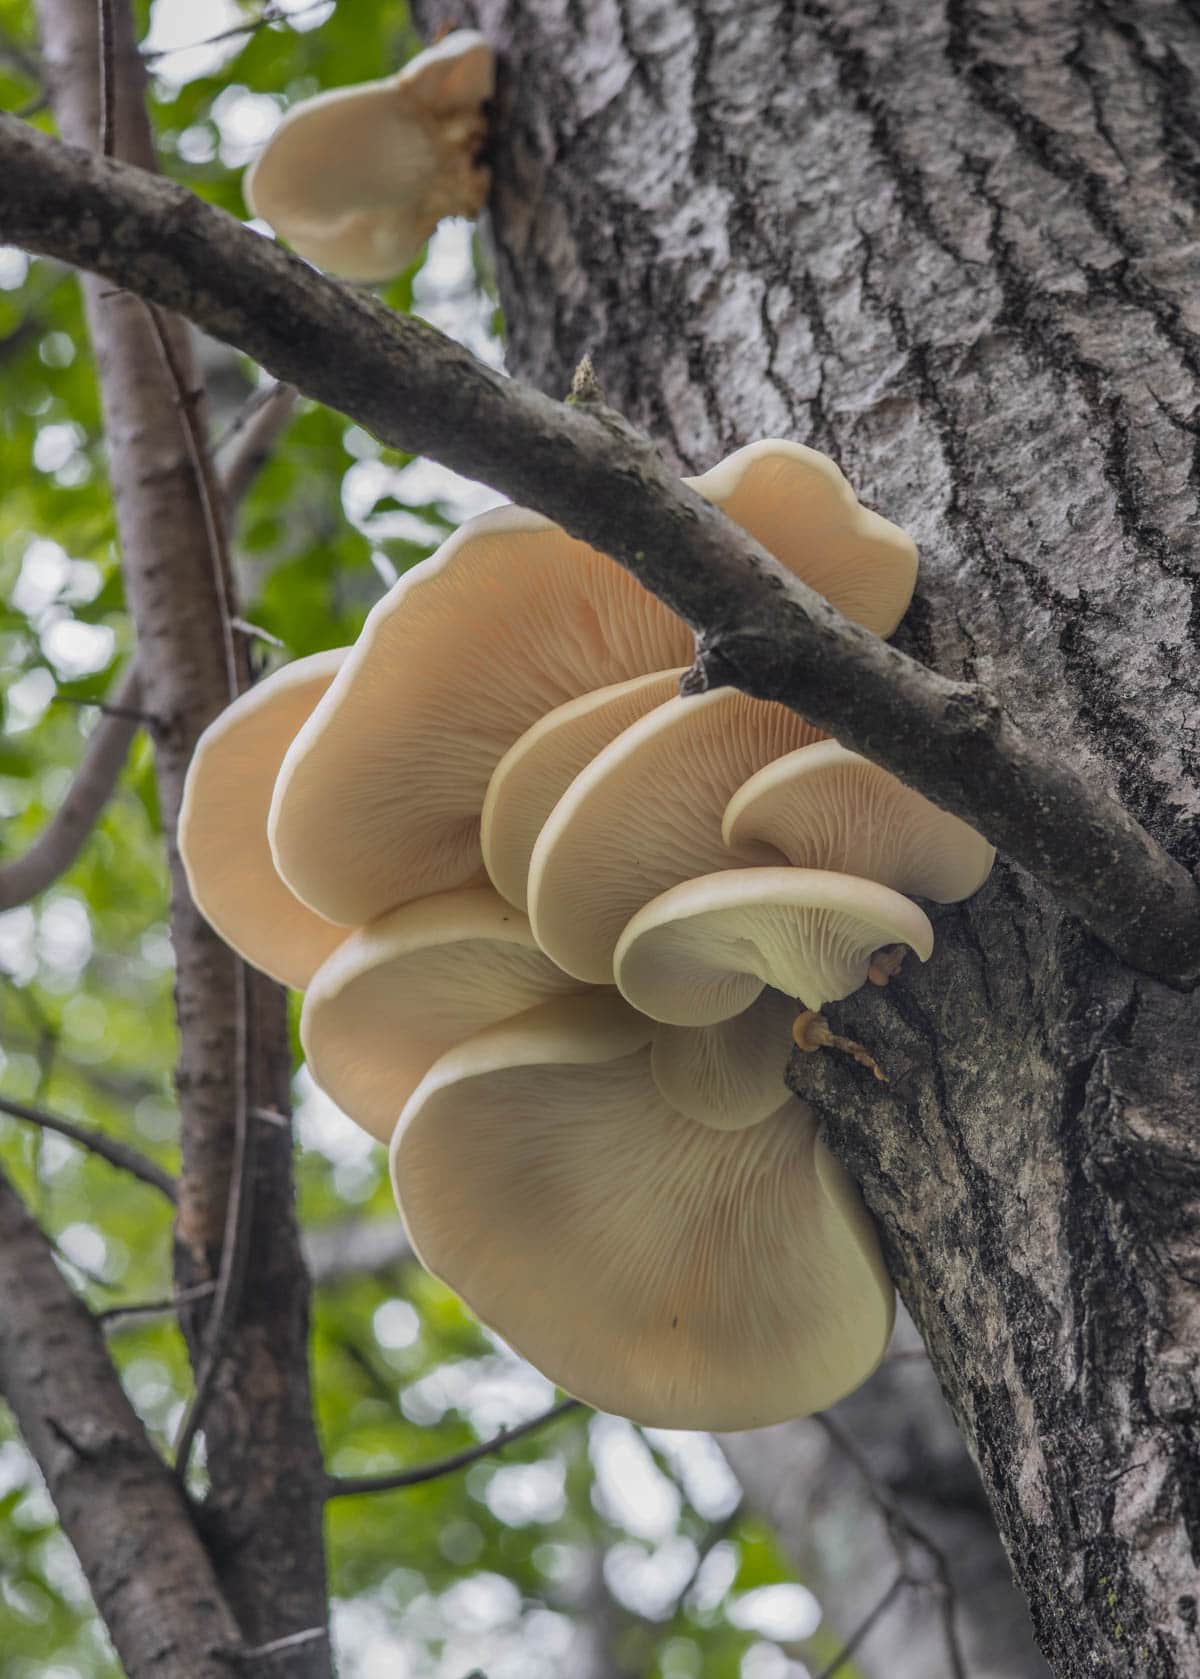 Oyster mushrooms (Pleurotus populinus) growing on an aspen tree in the spring. 